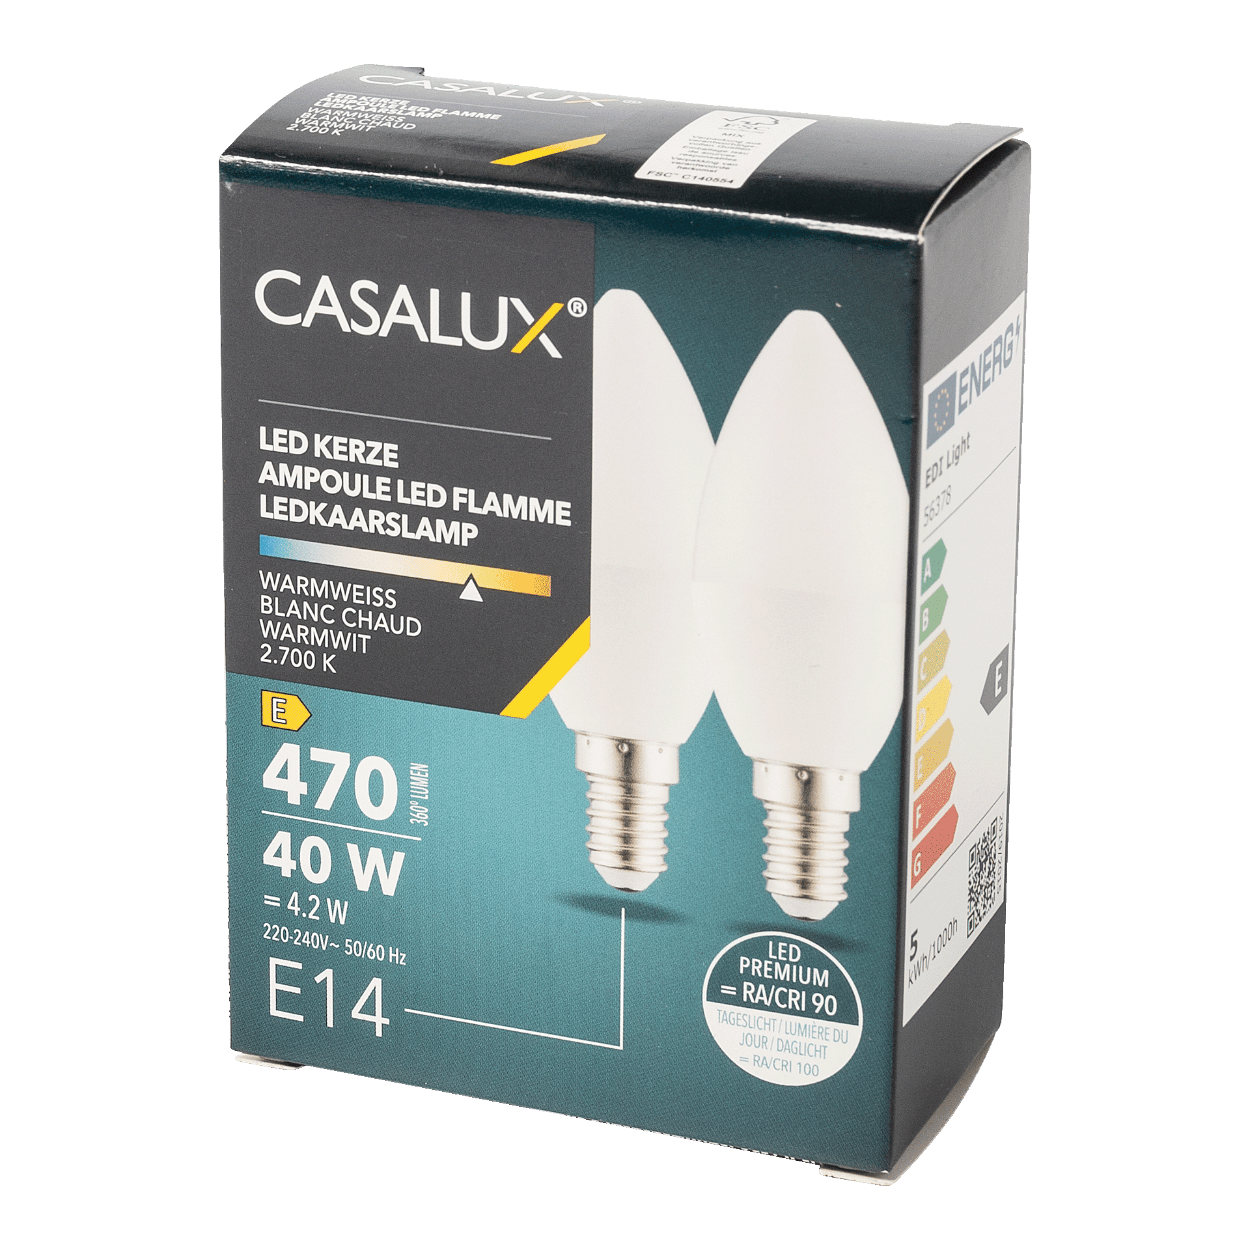 CASALUX® Ampoules LED, 2 pcs bon marché chez ALDI